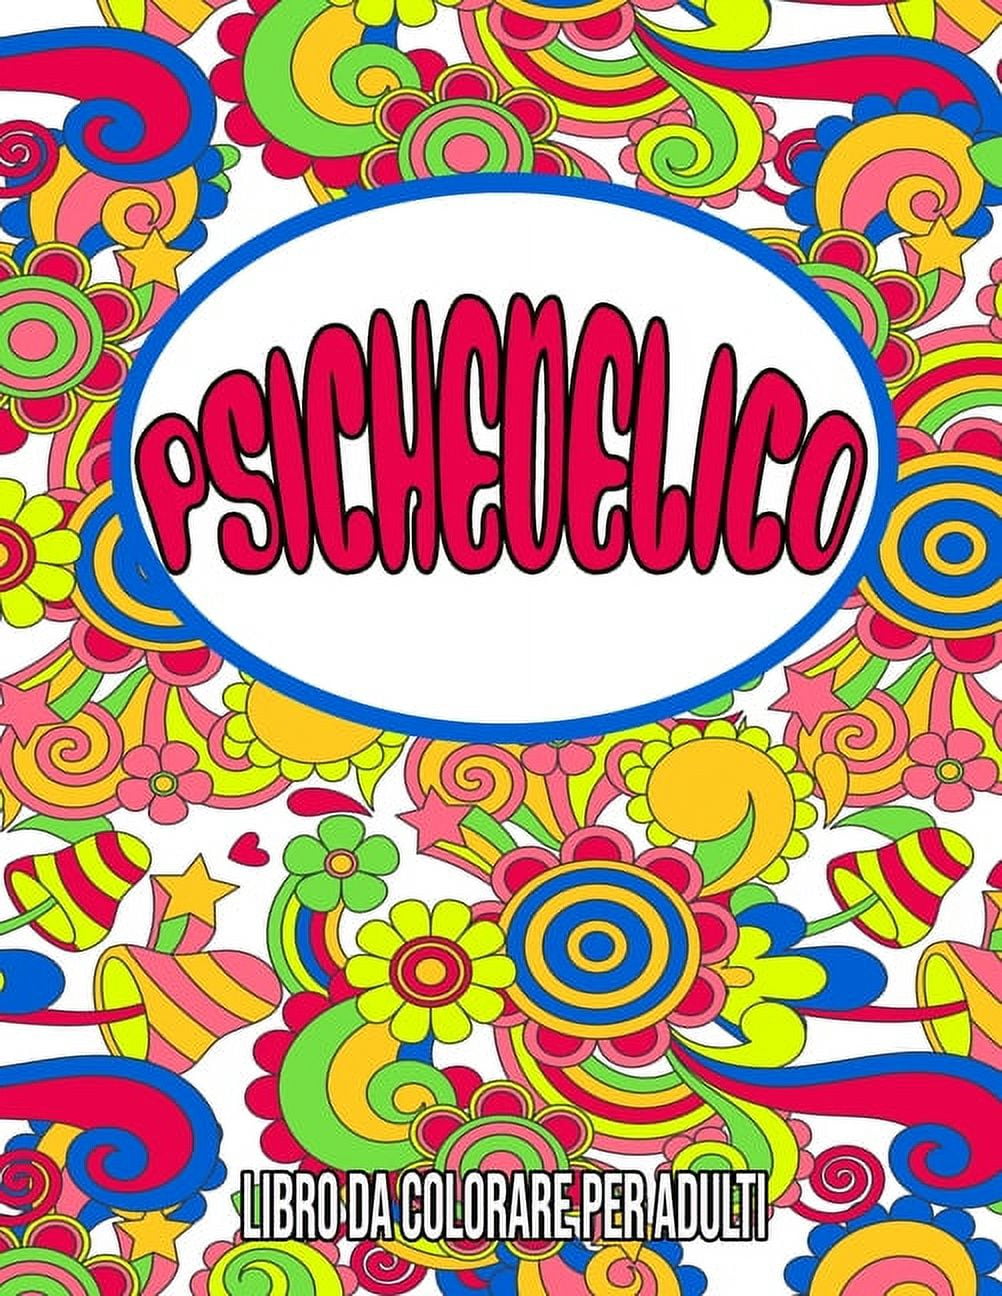 Psichedelico : Libro da Colorare per Adulti: libri da colorare psichedelici  / psichedelici libri / disegni psichedelici (Paperback)